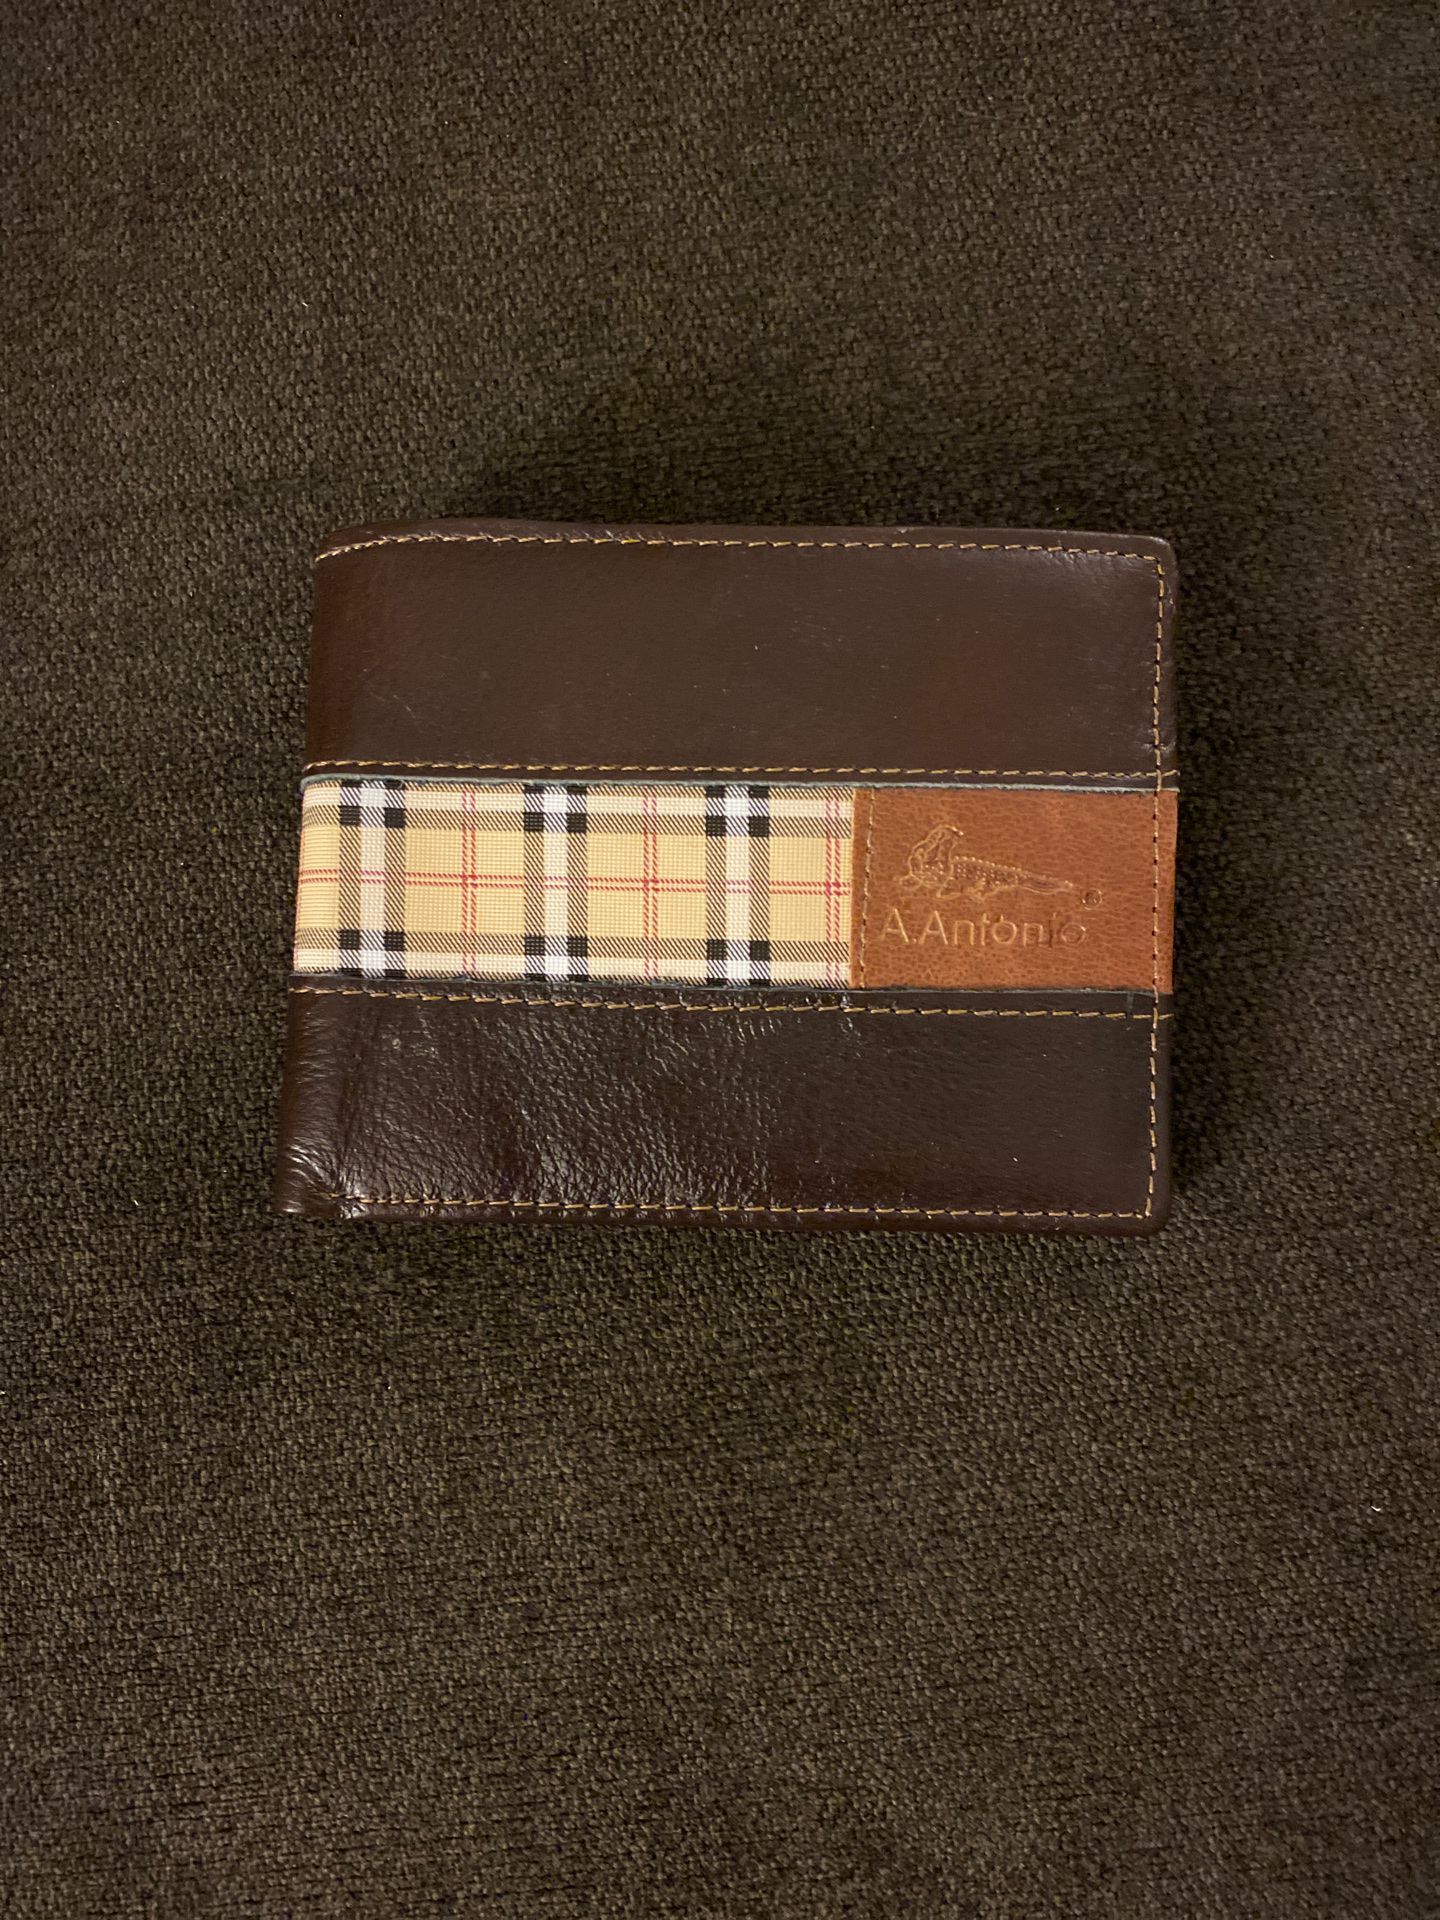 A.Antonio wallet